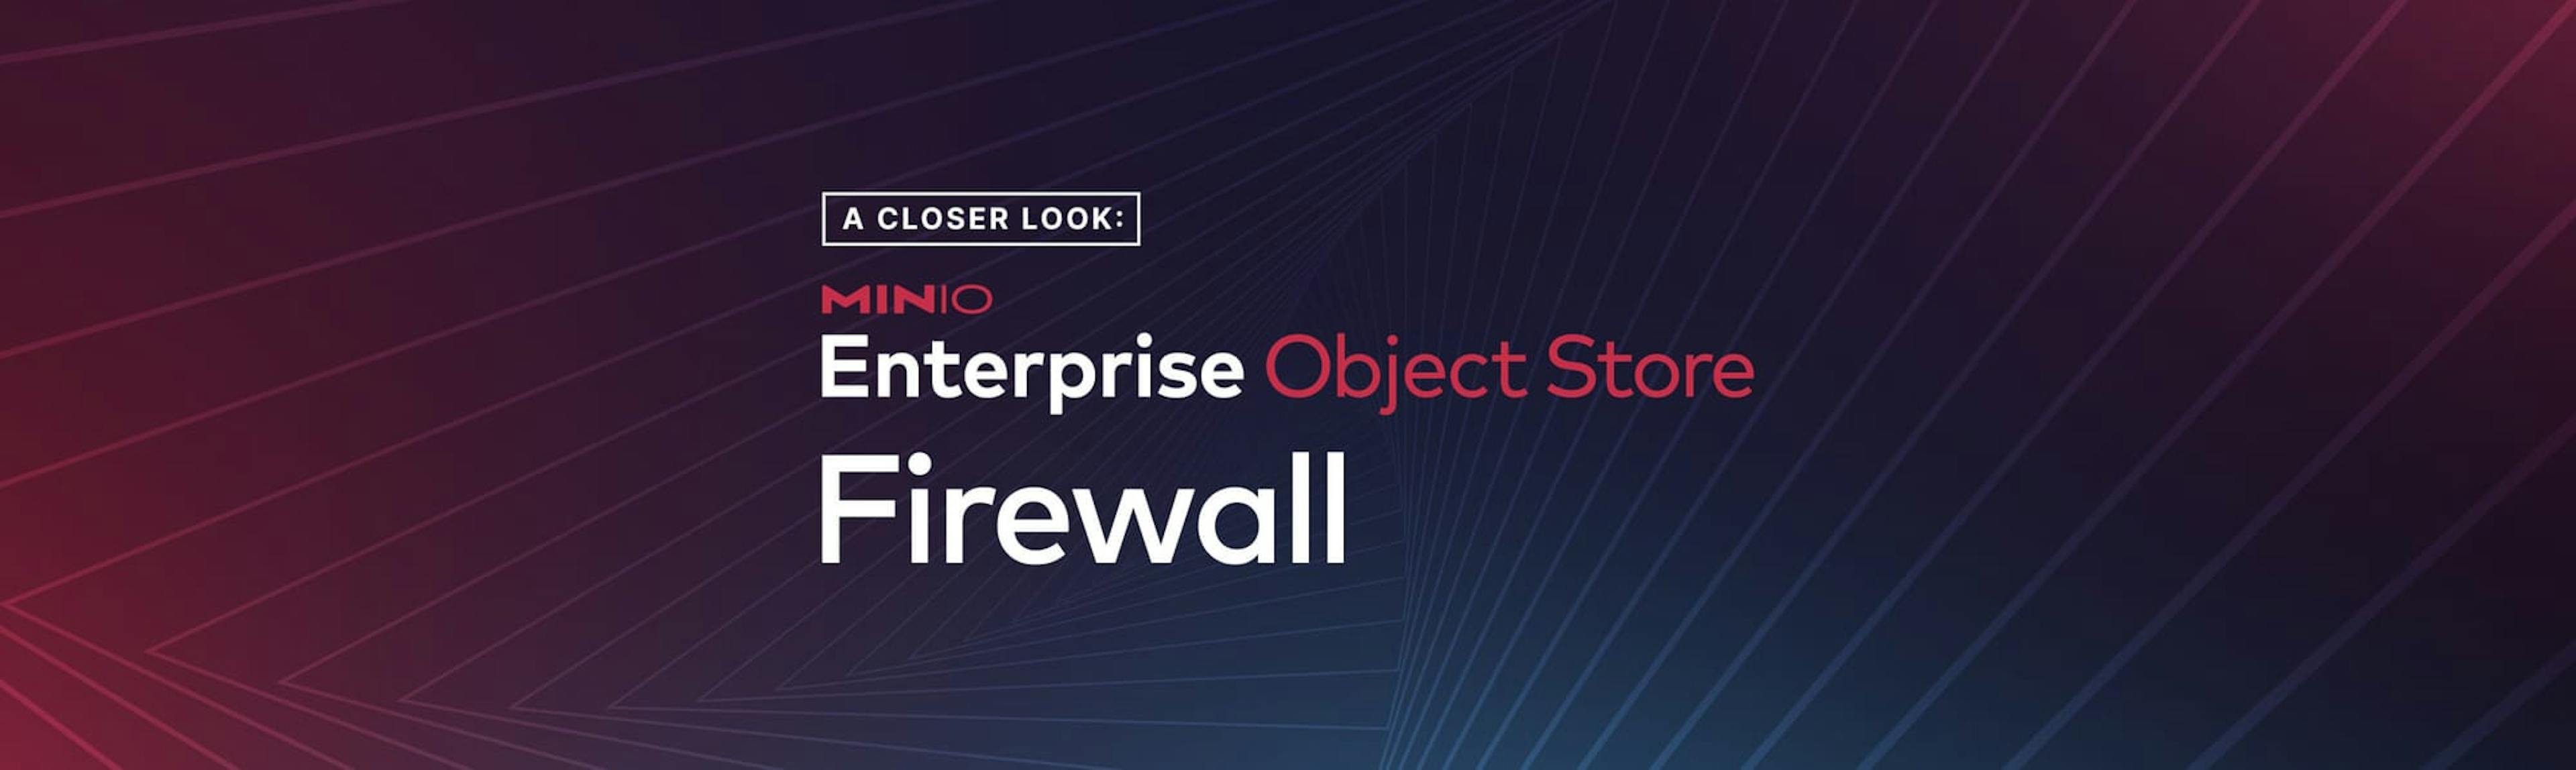 featured image - Uma análise mais detalhada do firewall do MinIO Enterprise Object Store